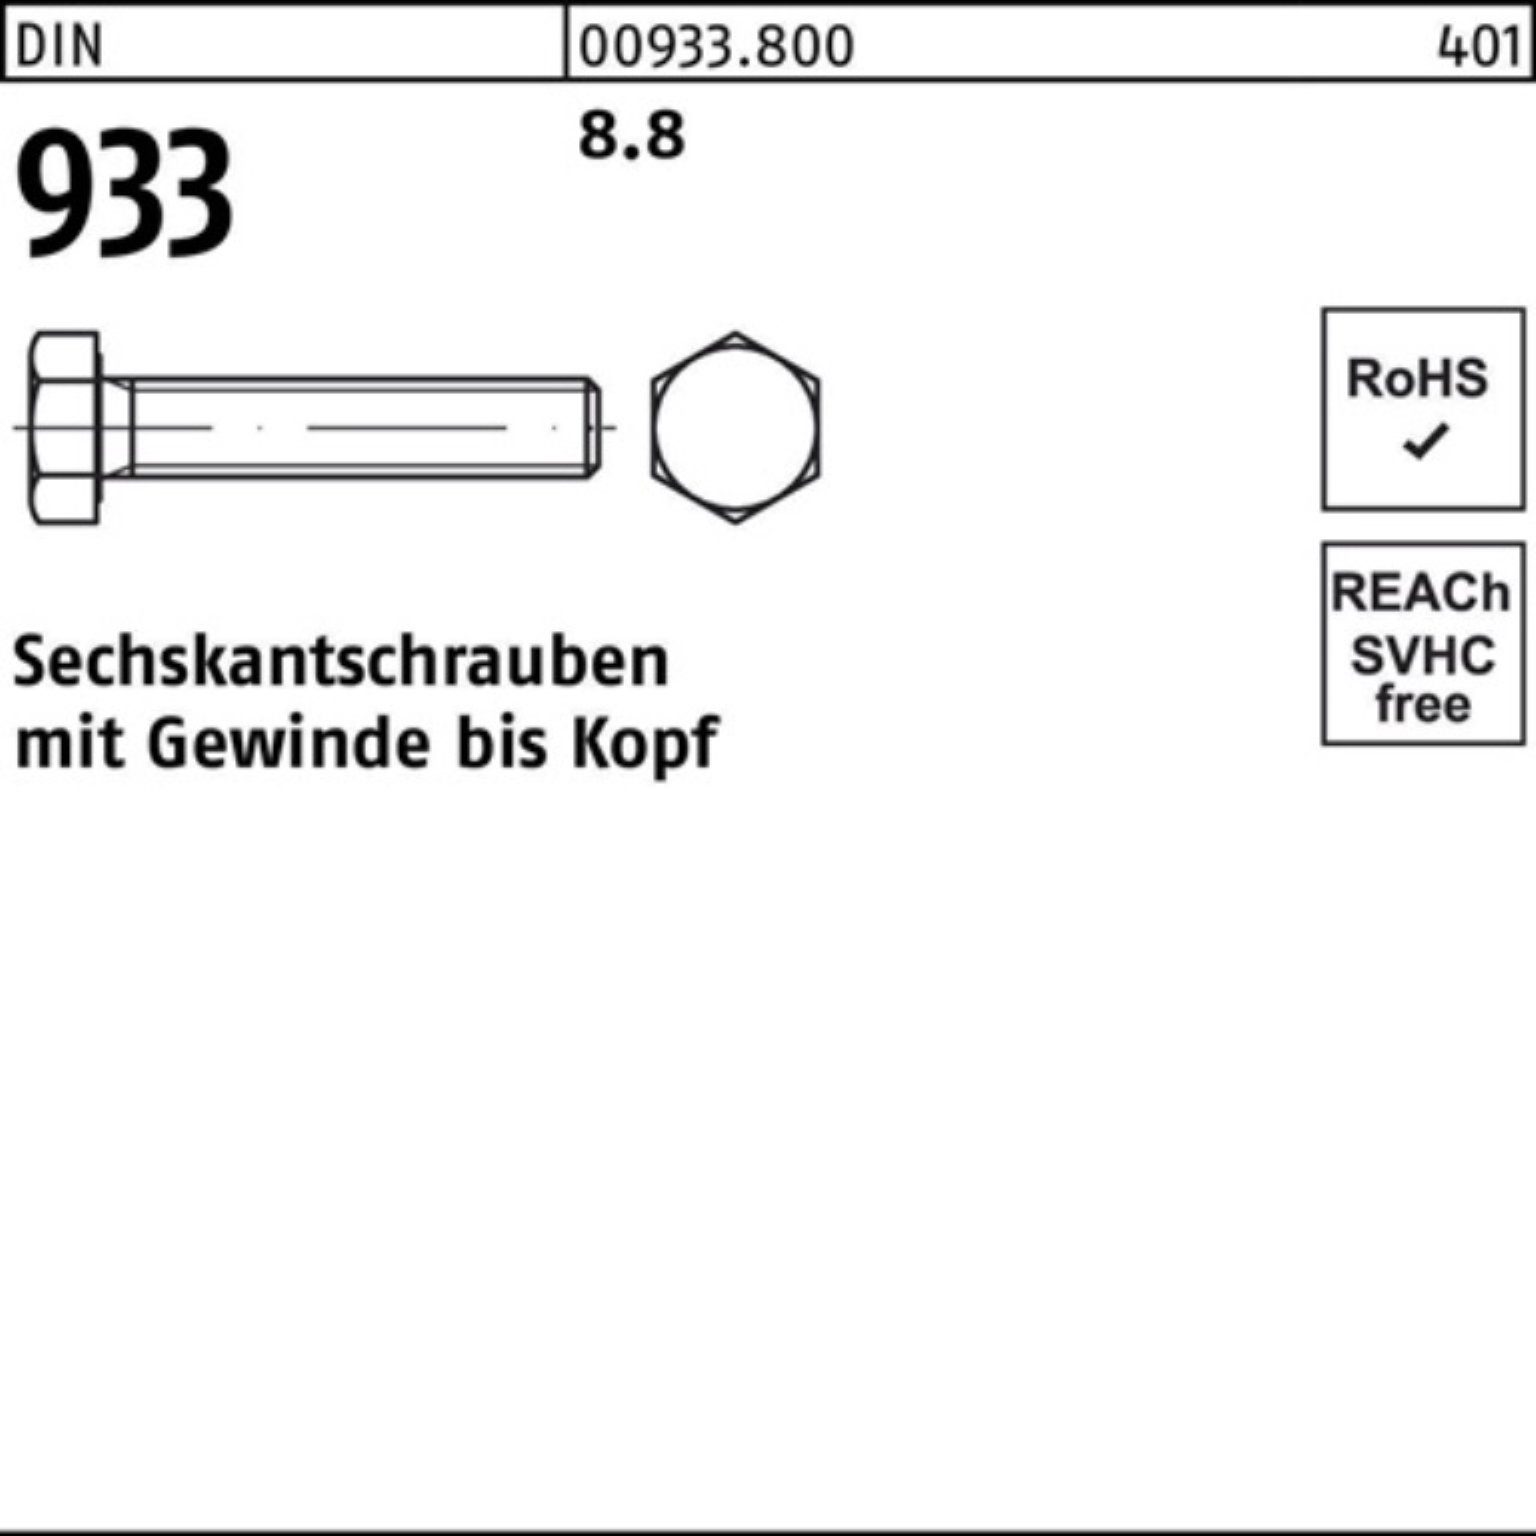 Reyher Sechskantschraube 100er 1 M36x Sechskantschraube 933 Pack VG 8.8 933 Stück 600 DIN DIN